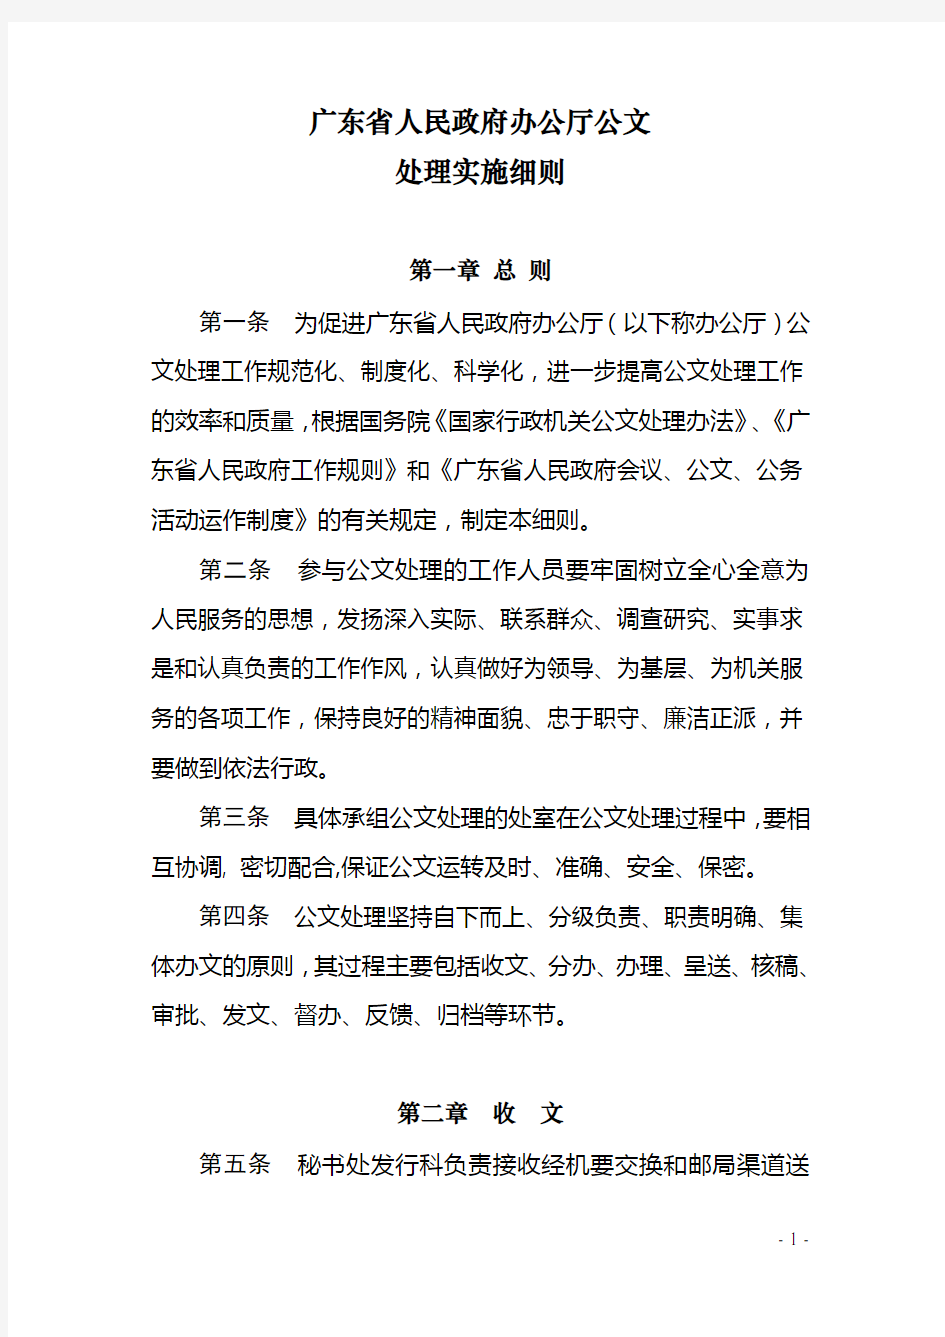 广东省人民政府办公厅公文处理实施细则